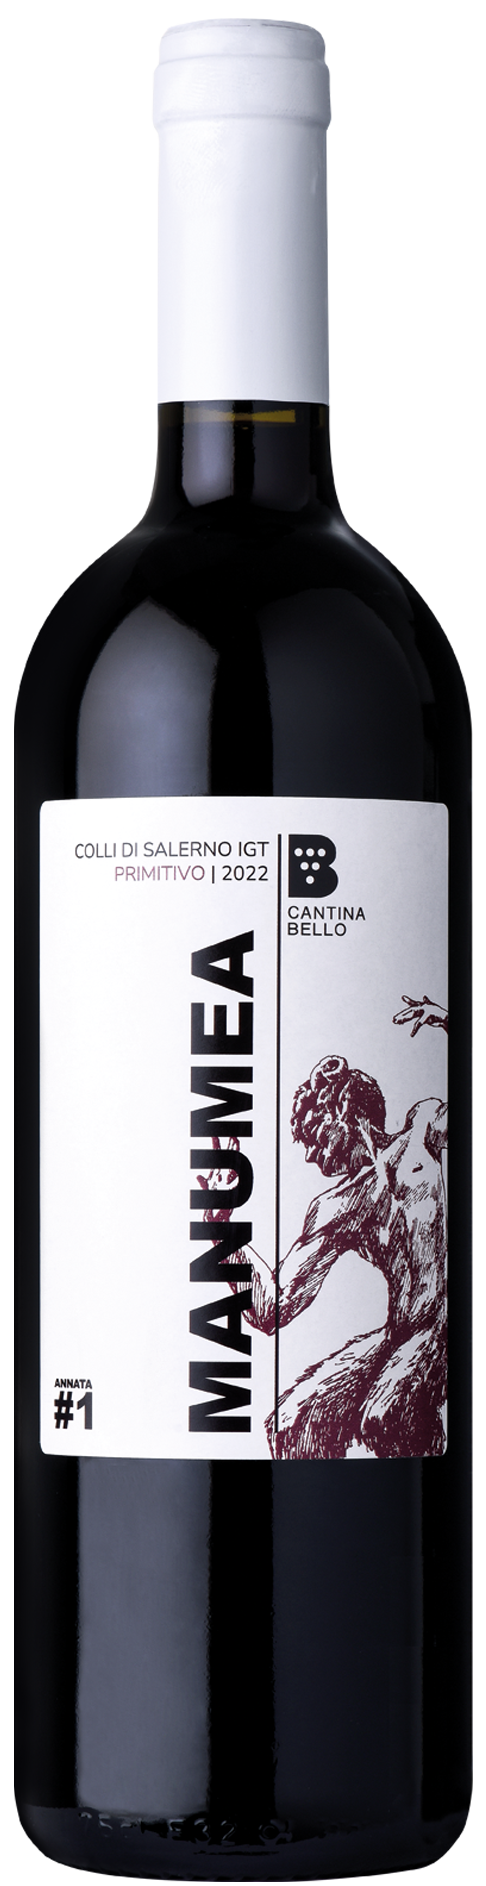 Bottiglia di vino rosso Primitivo, Colli di Salerno IGT della Cantina Bello.